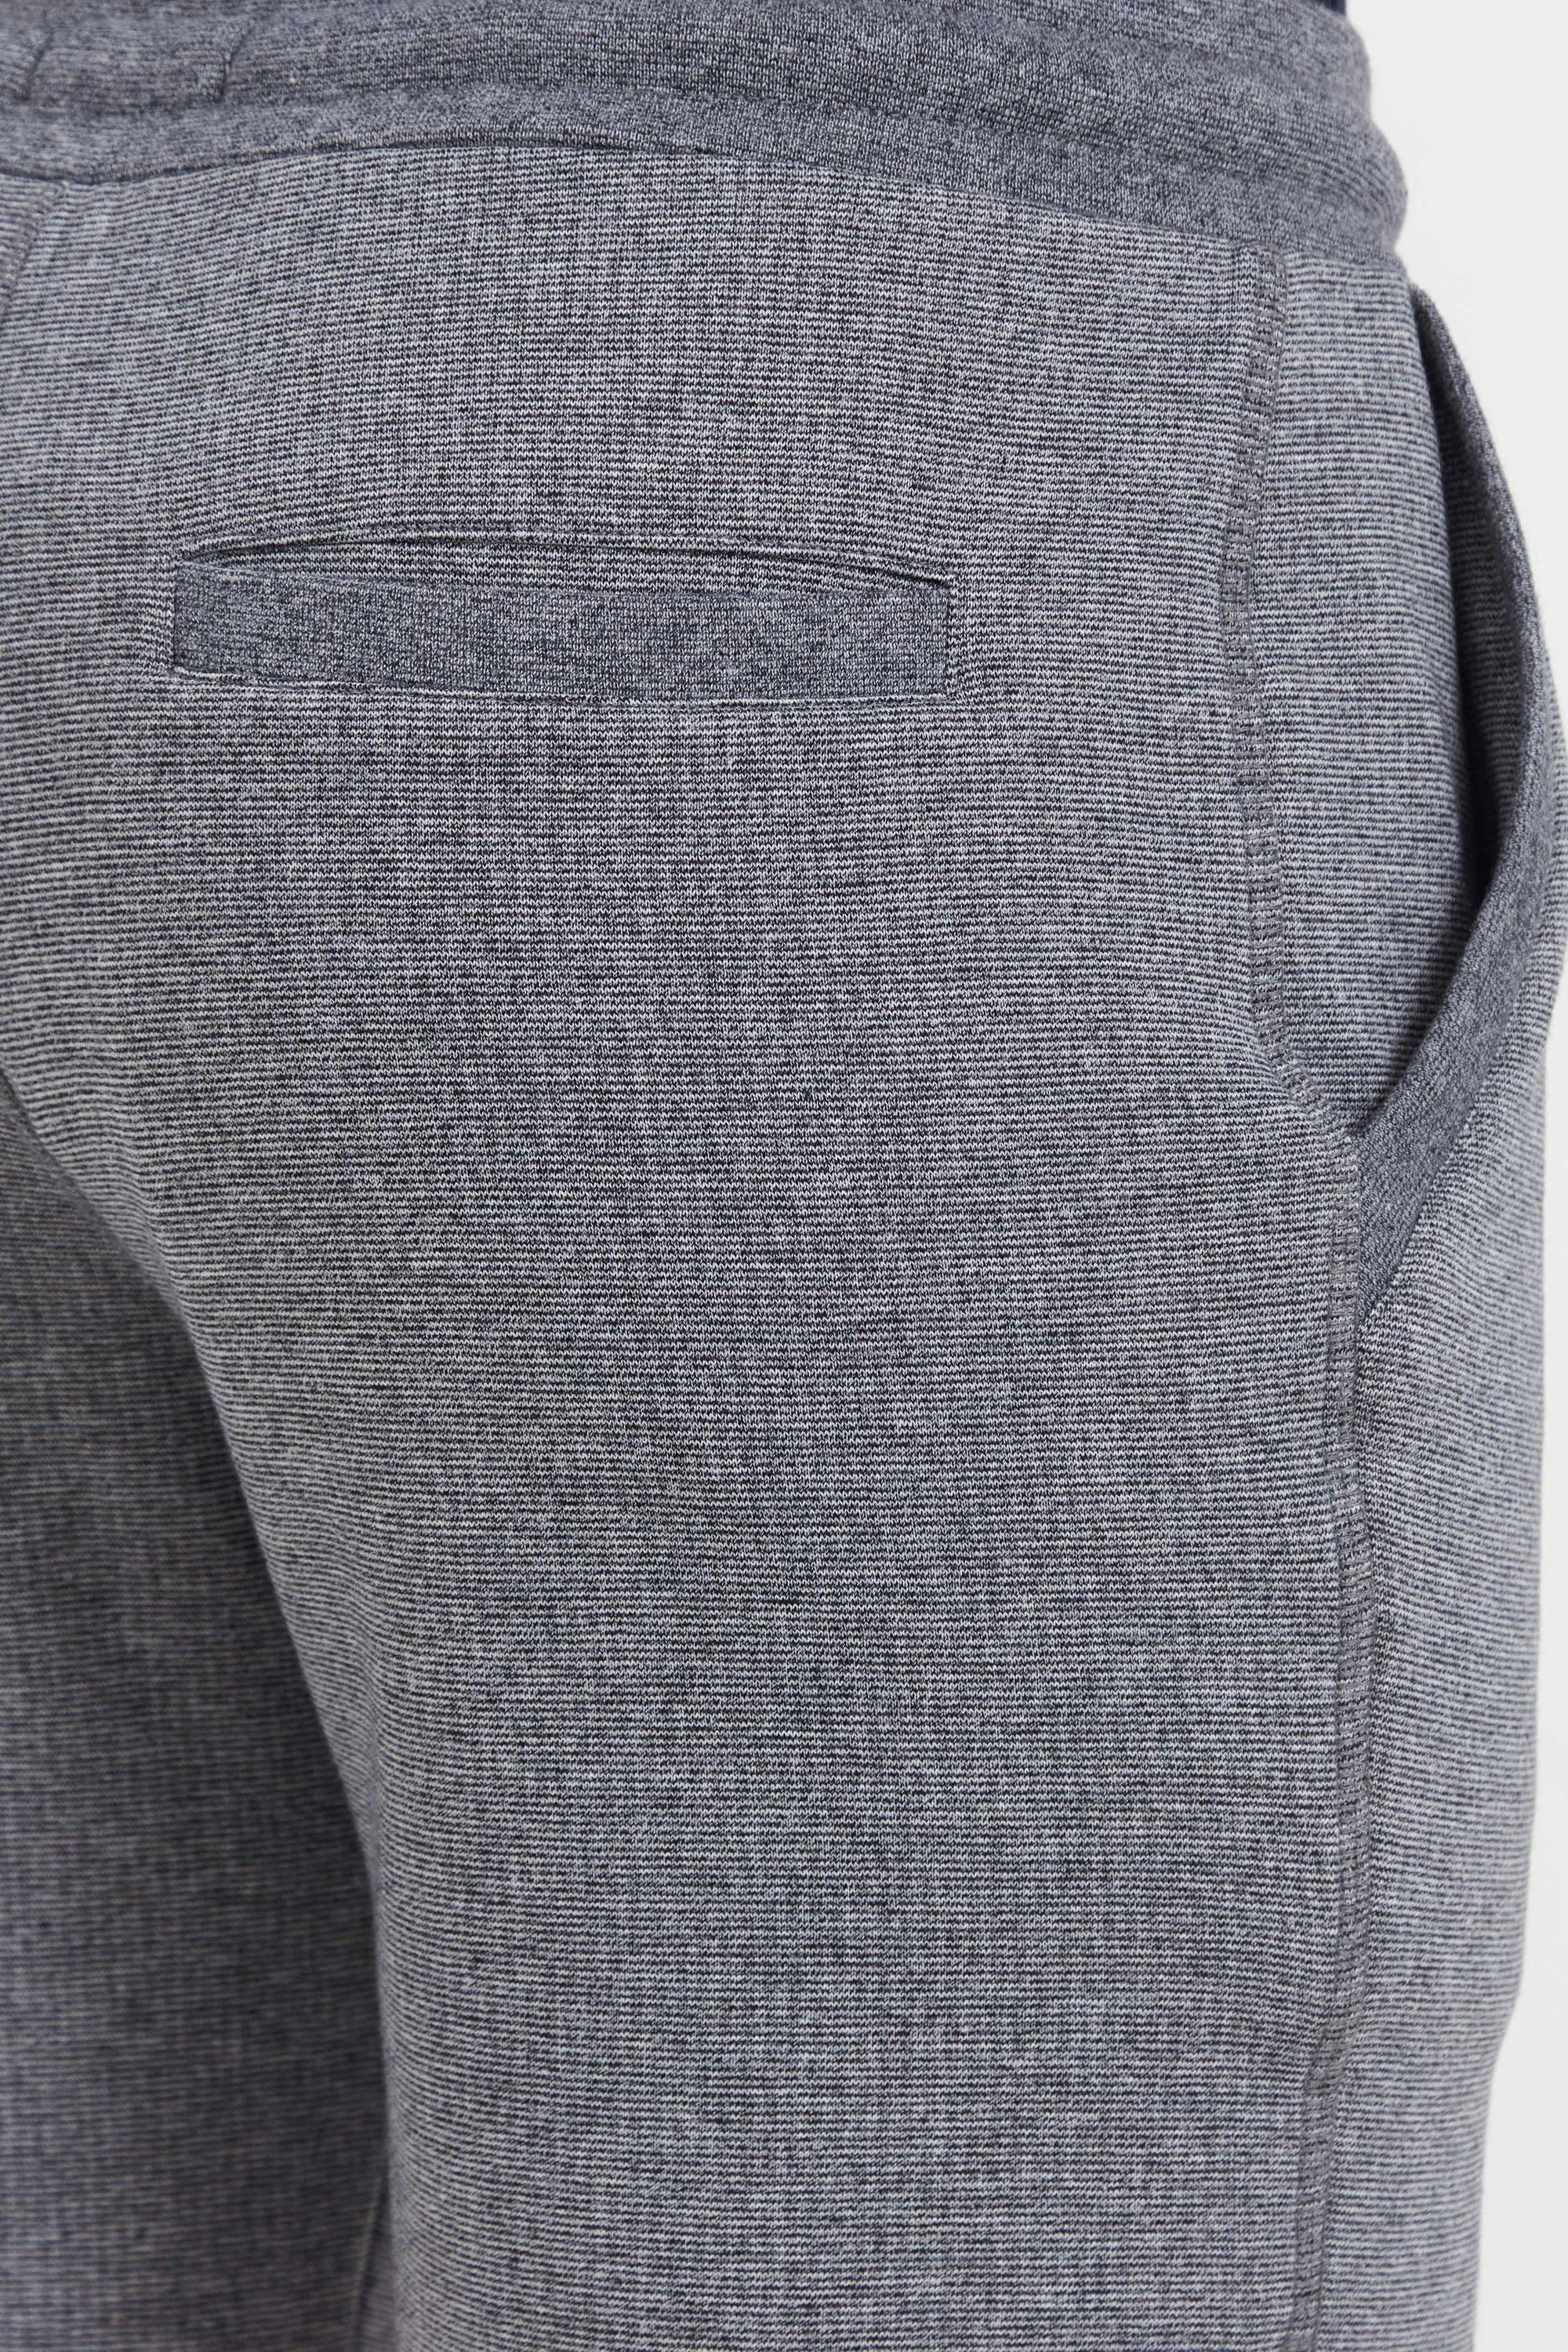 (1940071) Melange !Solid Grey Dark SDNafko Sweat mit Sweatshorts Shorts Kordeln